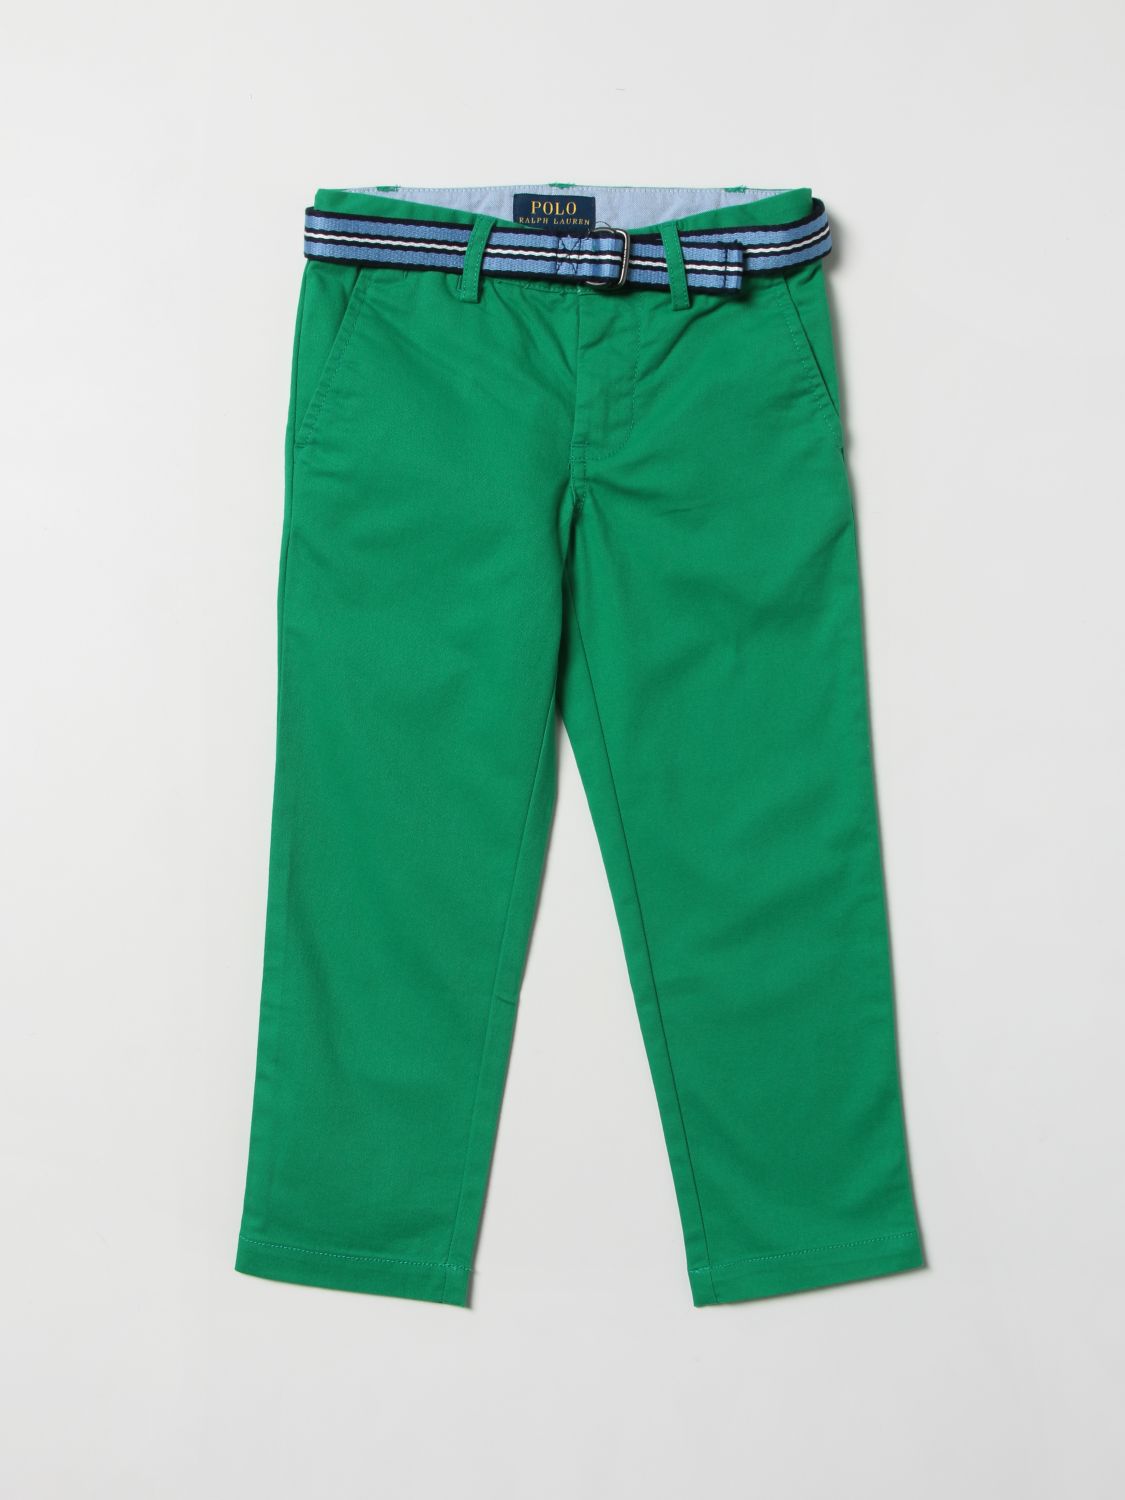 Introducir 91+ imagen polo ralph lauren green pants - Thcshoanghoatham ...